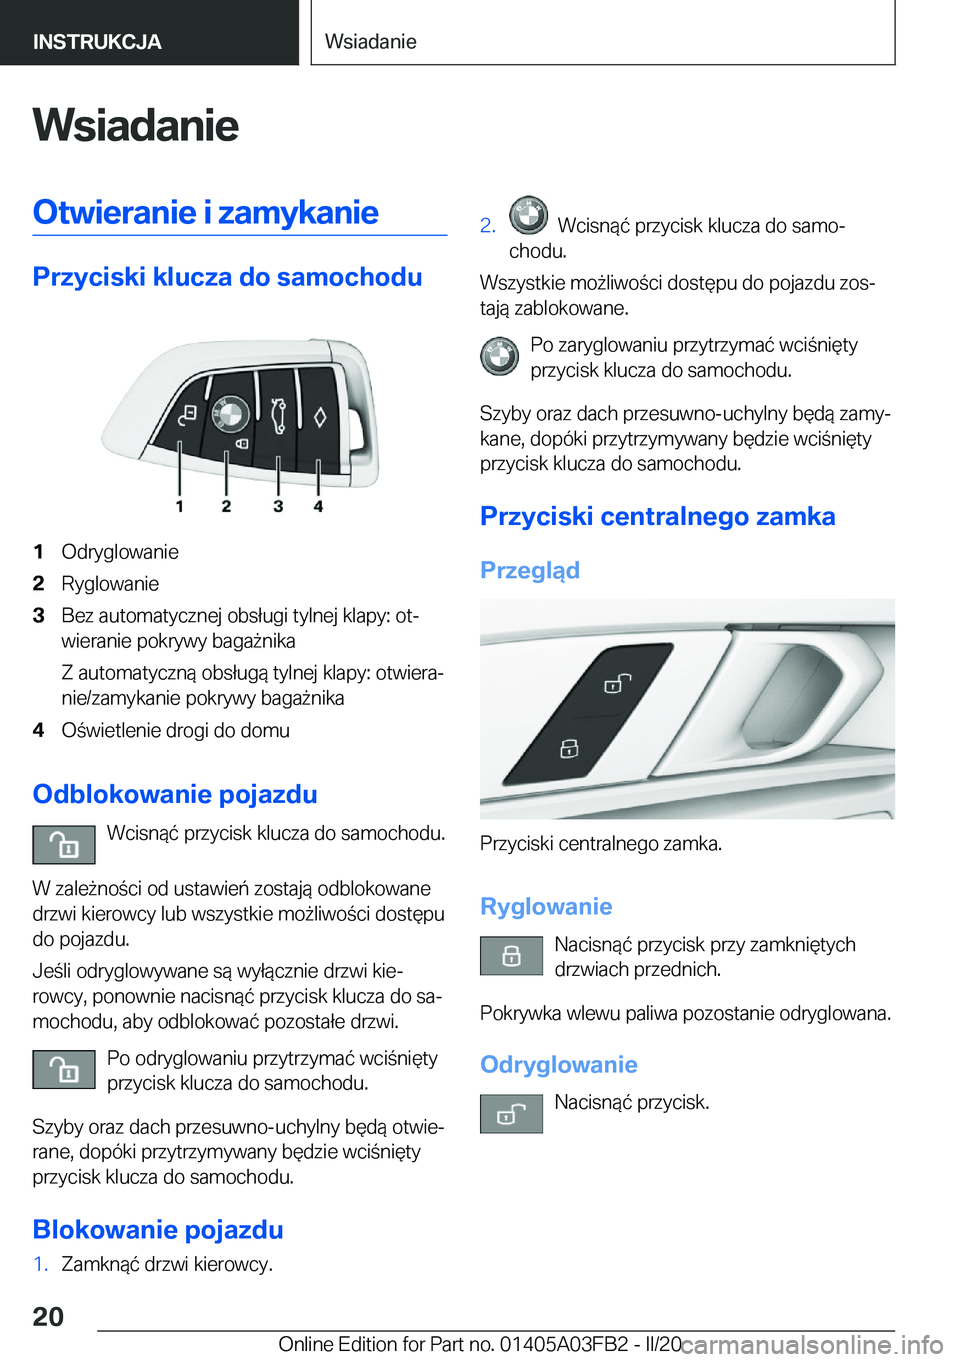 BMW 3 SERIES 2020  Instrukcja obsługi (in Polish) �W�s�i�a�d�a�n�i�e�O�t�w�i�e�r�a�n�i�e��i��z�a�m�y�k�a�n�i�e
�P�r�z�y�c�i�s�k�i��k�l�u�c�z�a��d�o��s�a�m�o�c�h�o�d�u
�1�O�d�r�y�g�l�o�w�a�n�i�e�2�R�y�g�l�o�w�a�n�i�e�3�B�e�z��a�u�t�o�m�a�t�y�c�z